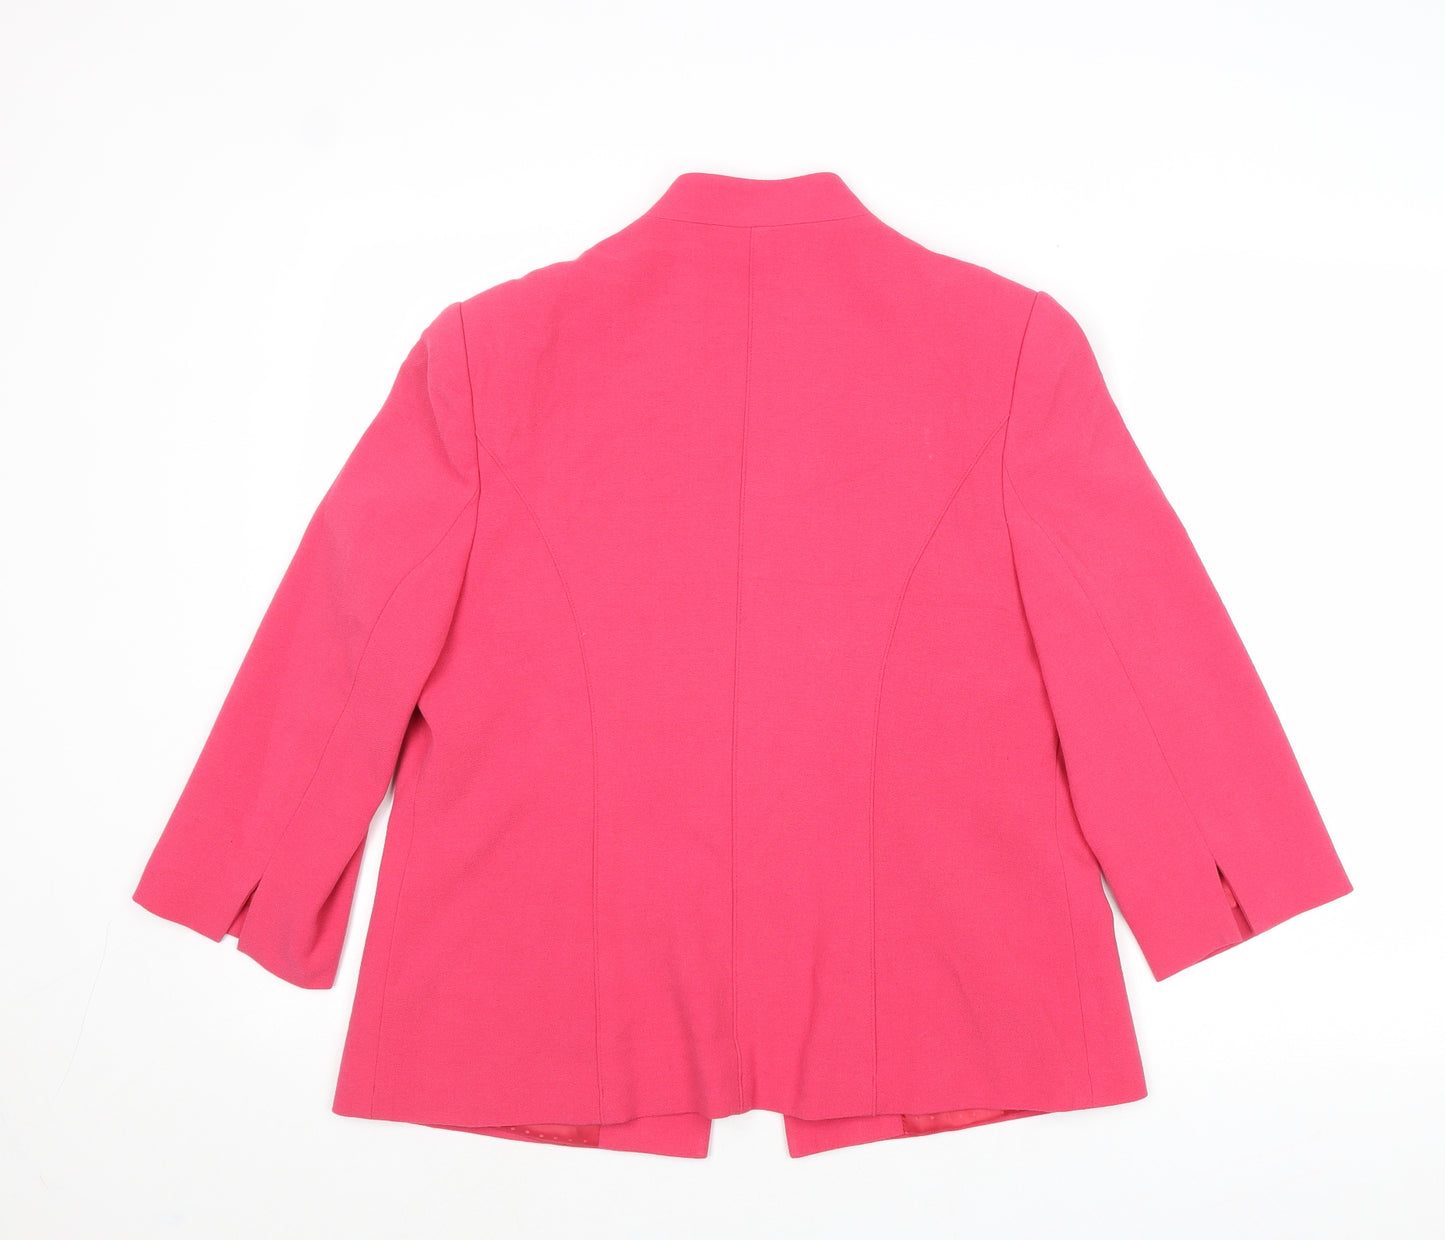 EWM Womens Pink Jacket Blazer Size 14 Button